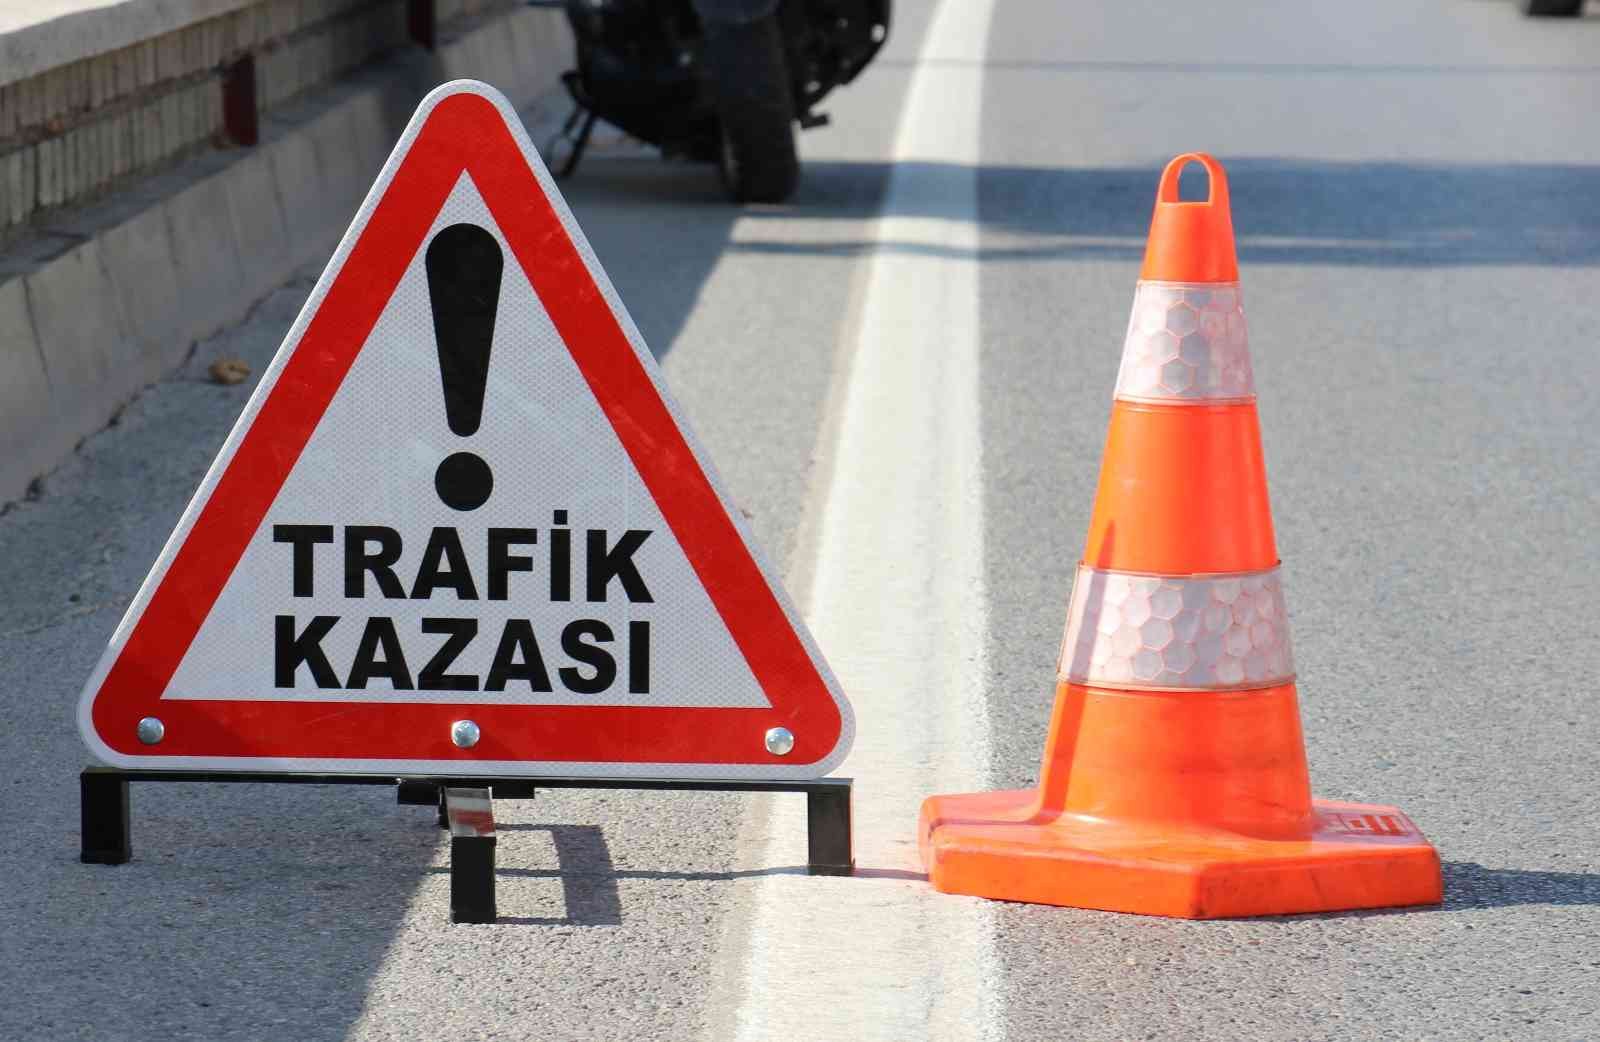 Aydın’da trafik kazası: 1 ölü #aydin